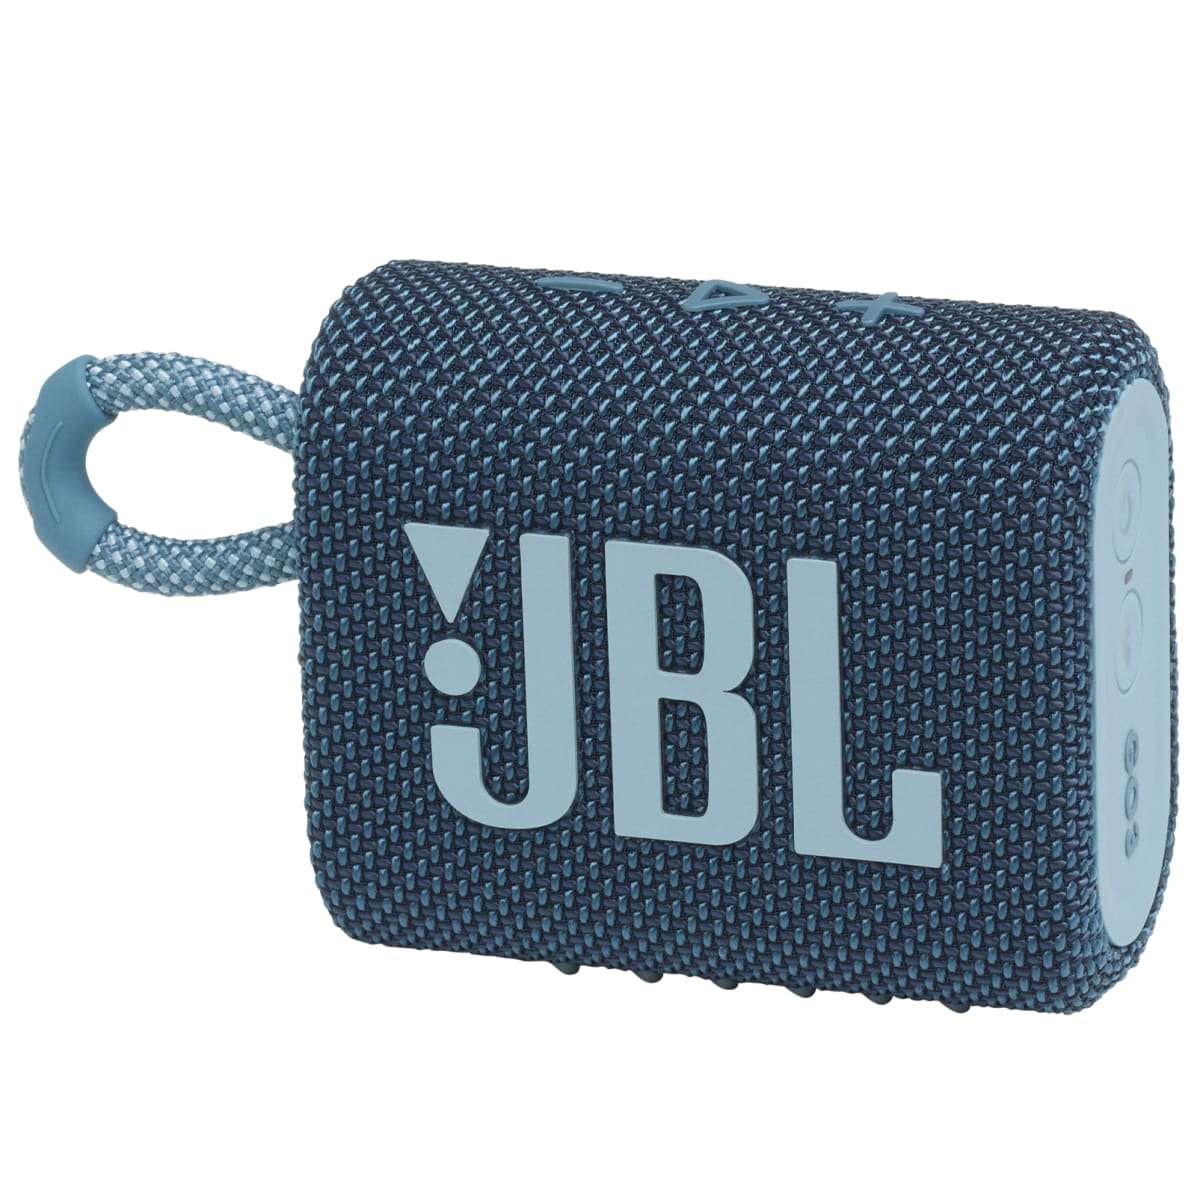 JBL Go 3 Portable Waterproof Wireless IP67 Dustproof Outdoor Bluetooth  Speaker (White) 